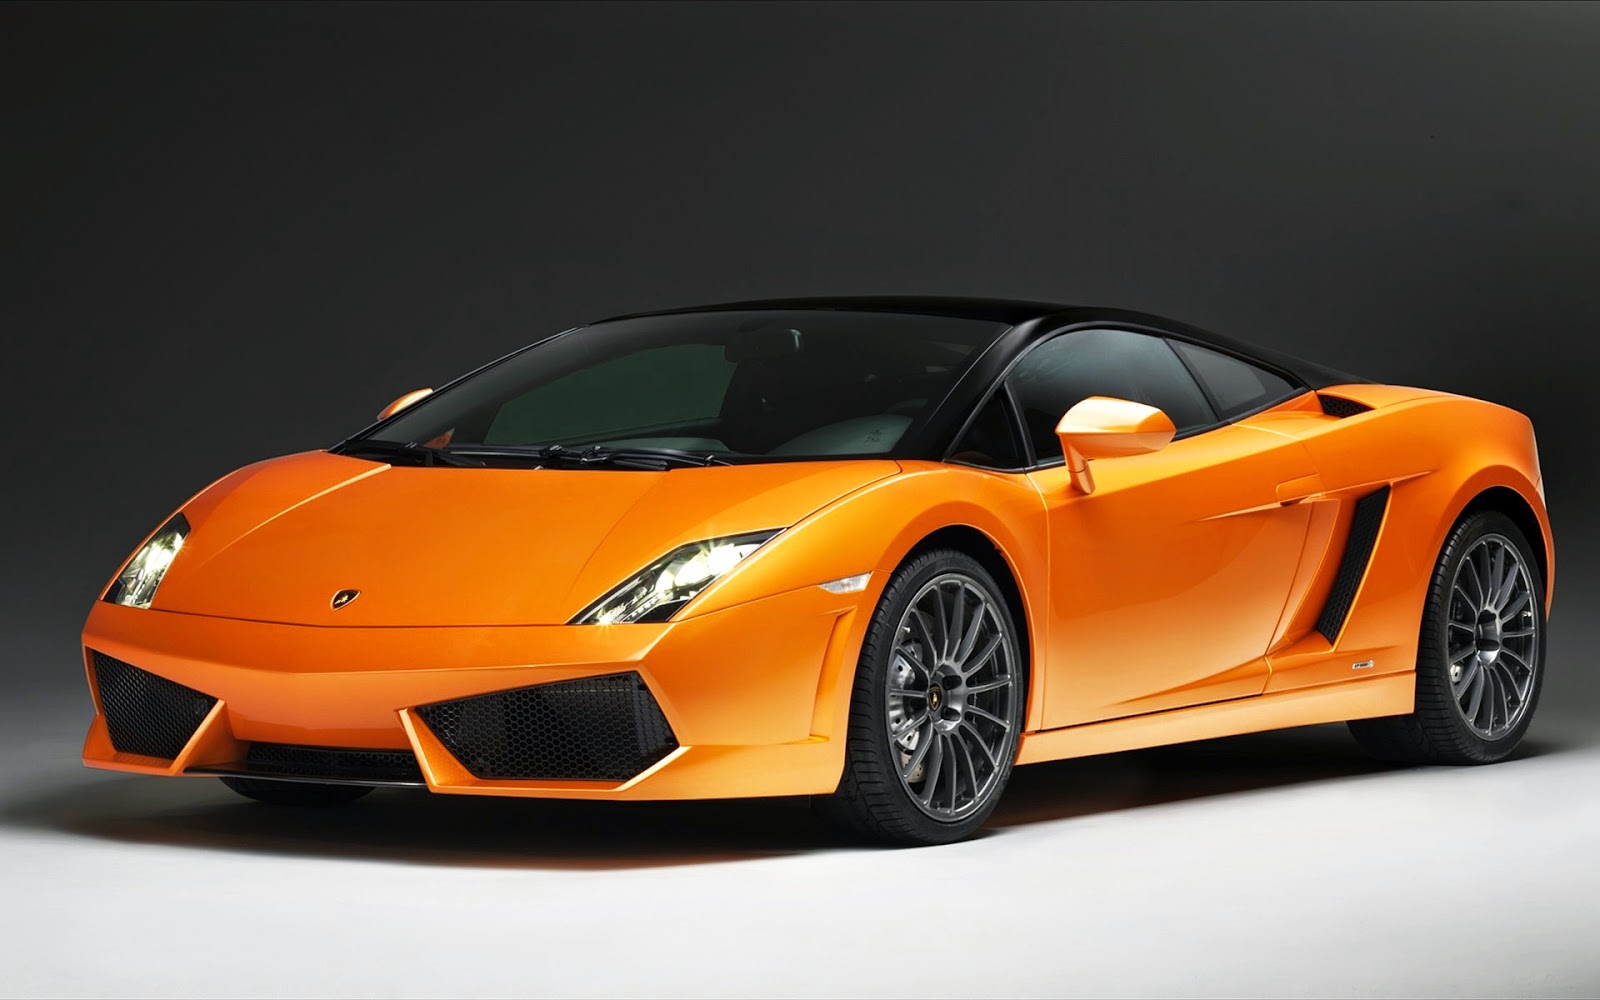 Kumpulan Gambar Modifikasi New Lamborghini Gallardo Indonesia